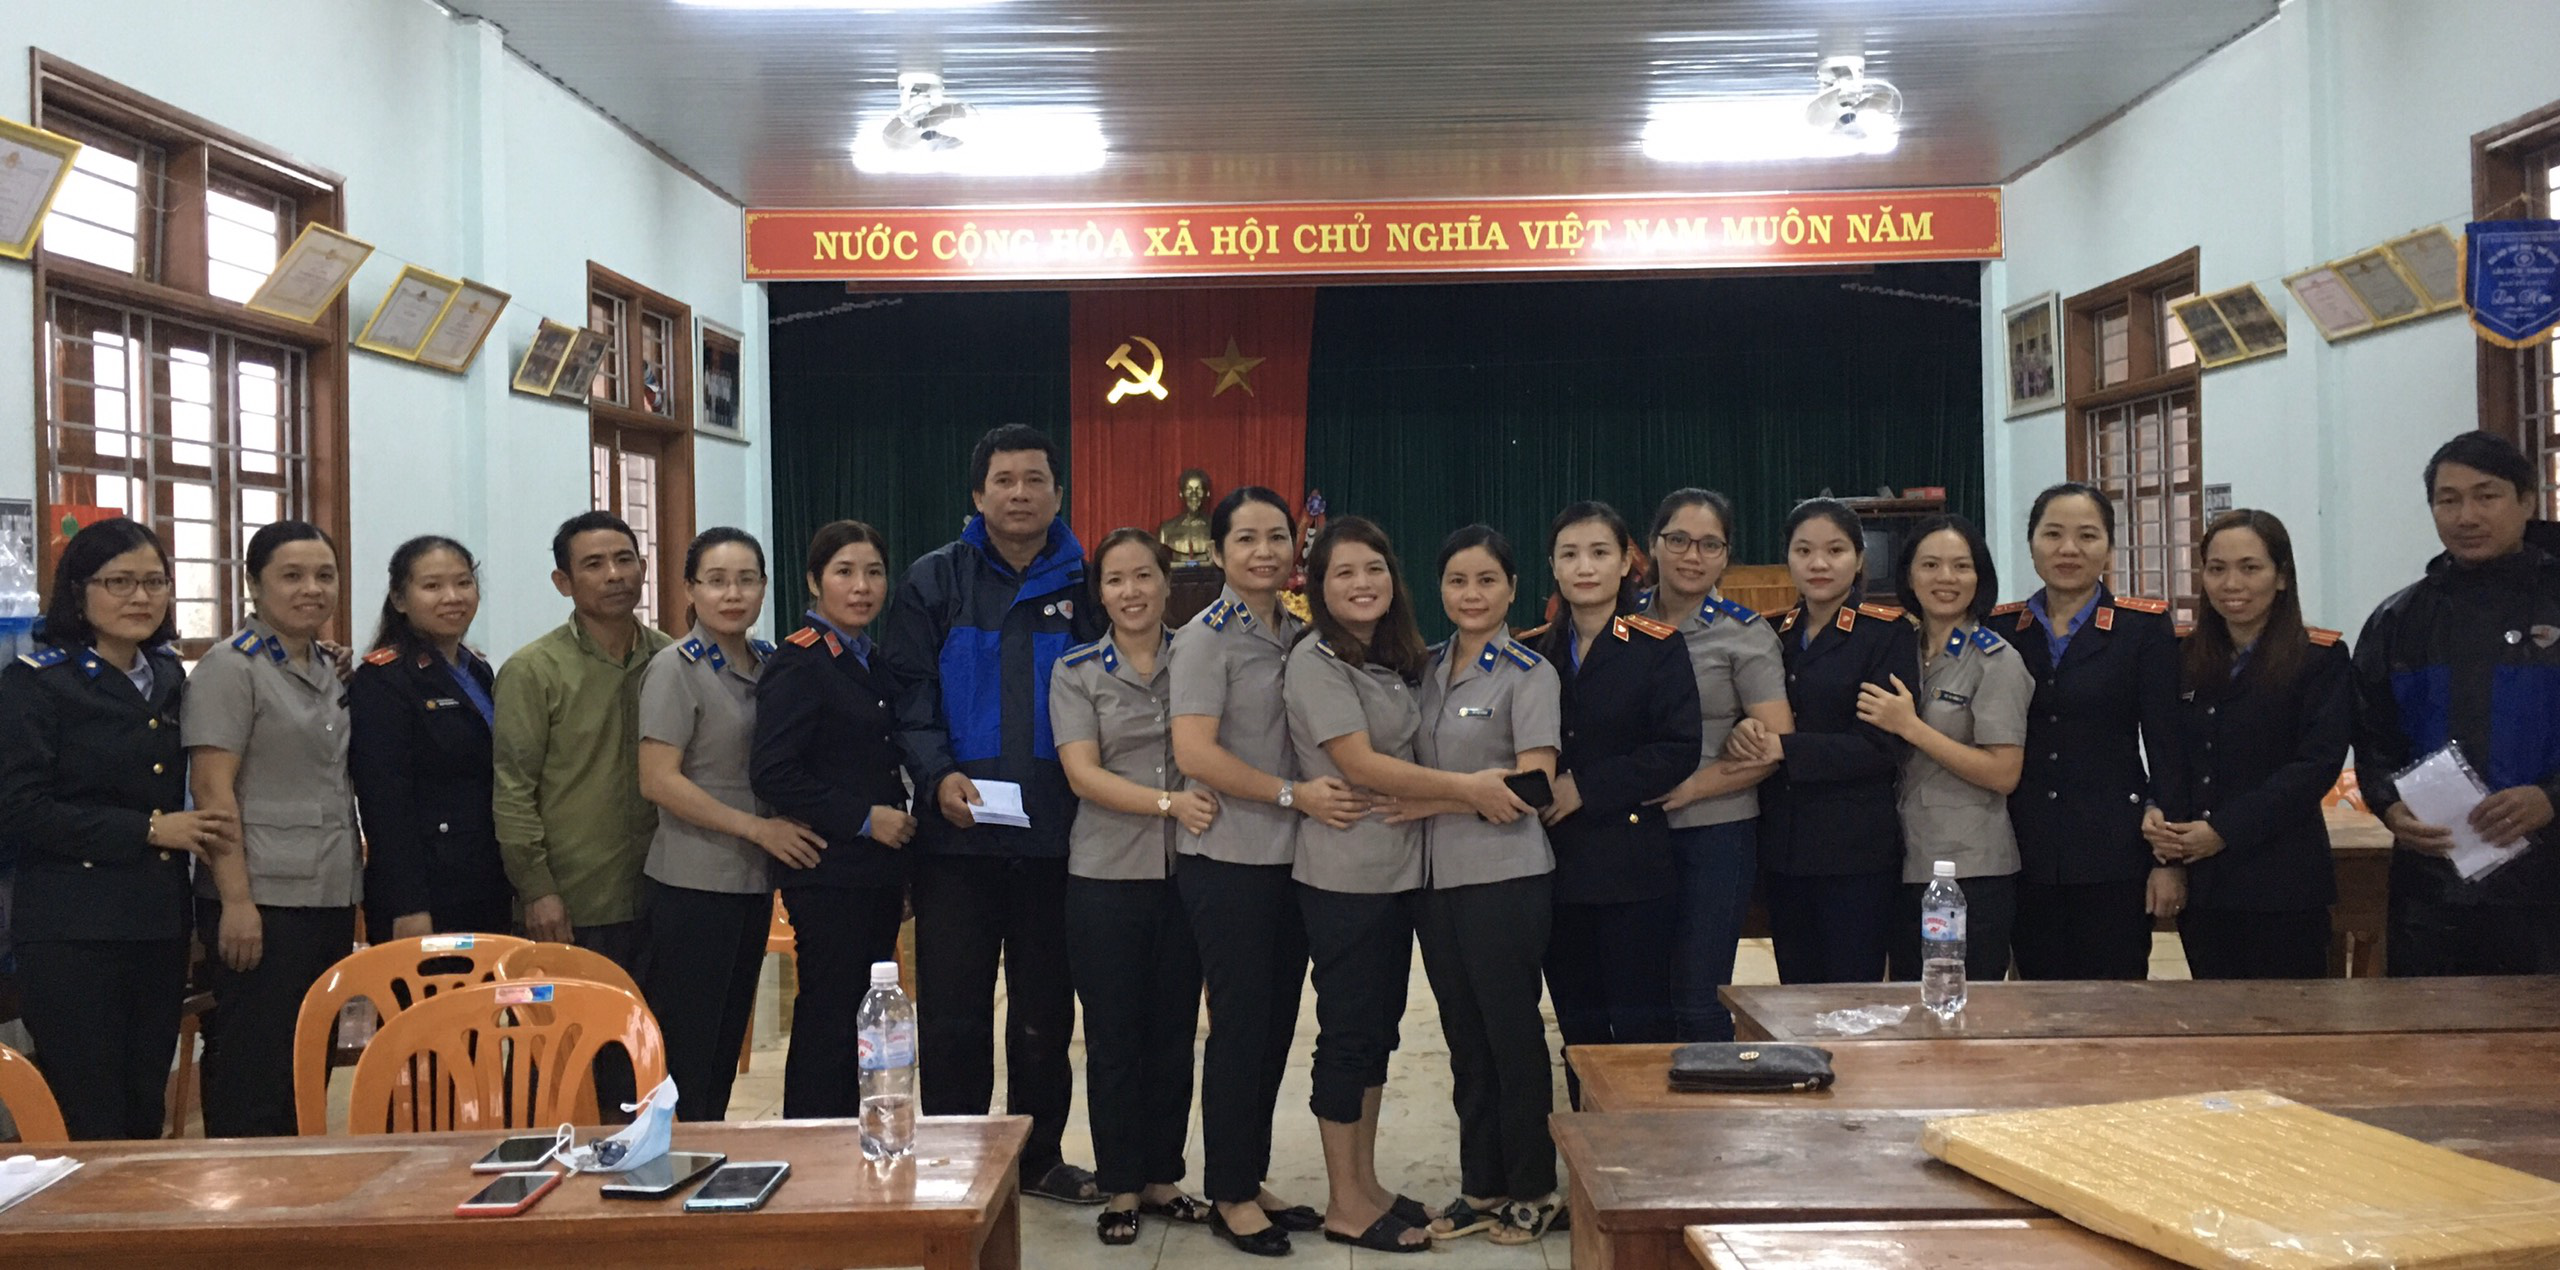 Phụ nữ Chi cục Thi hành án dân sự Vĩnh Linh trao yêu thương trong ngày Phụ nữ Việt Nam 20-10